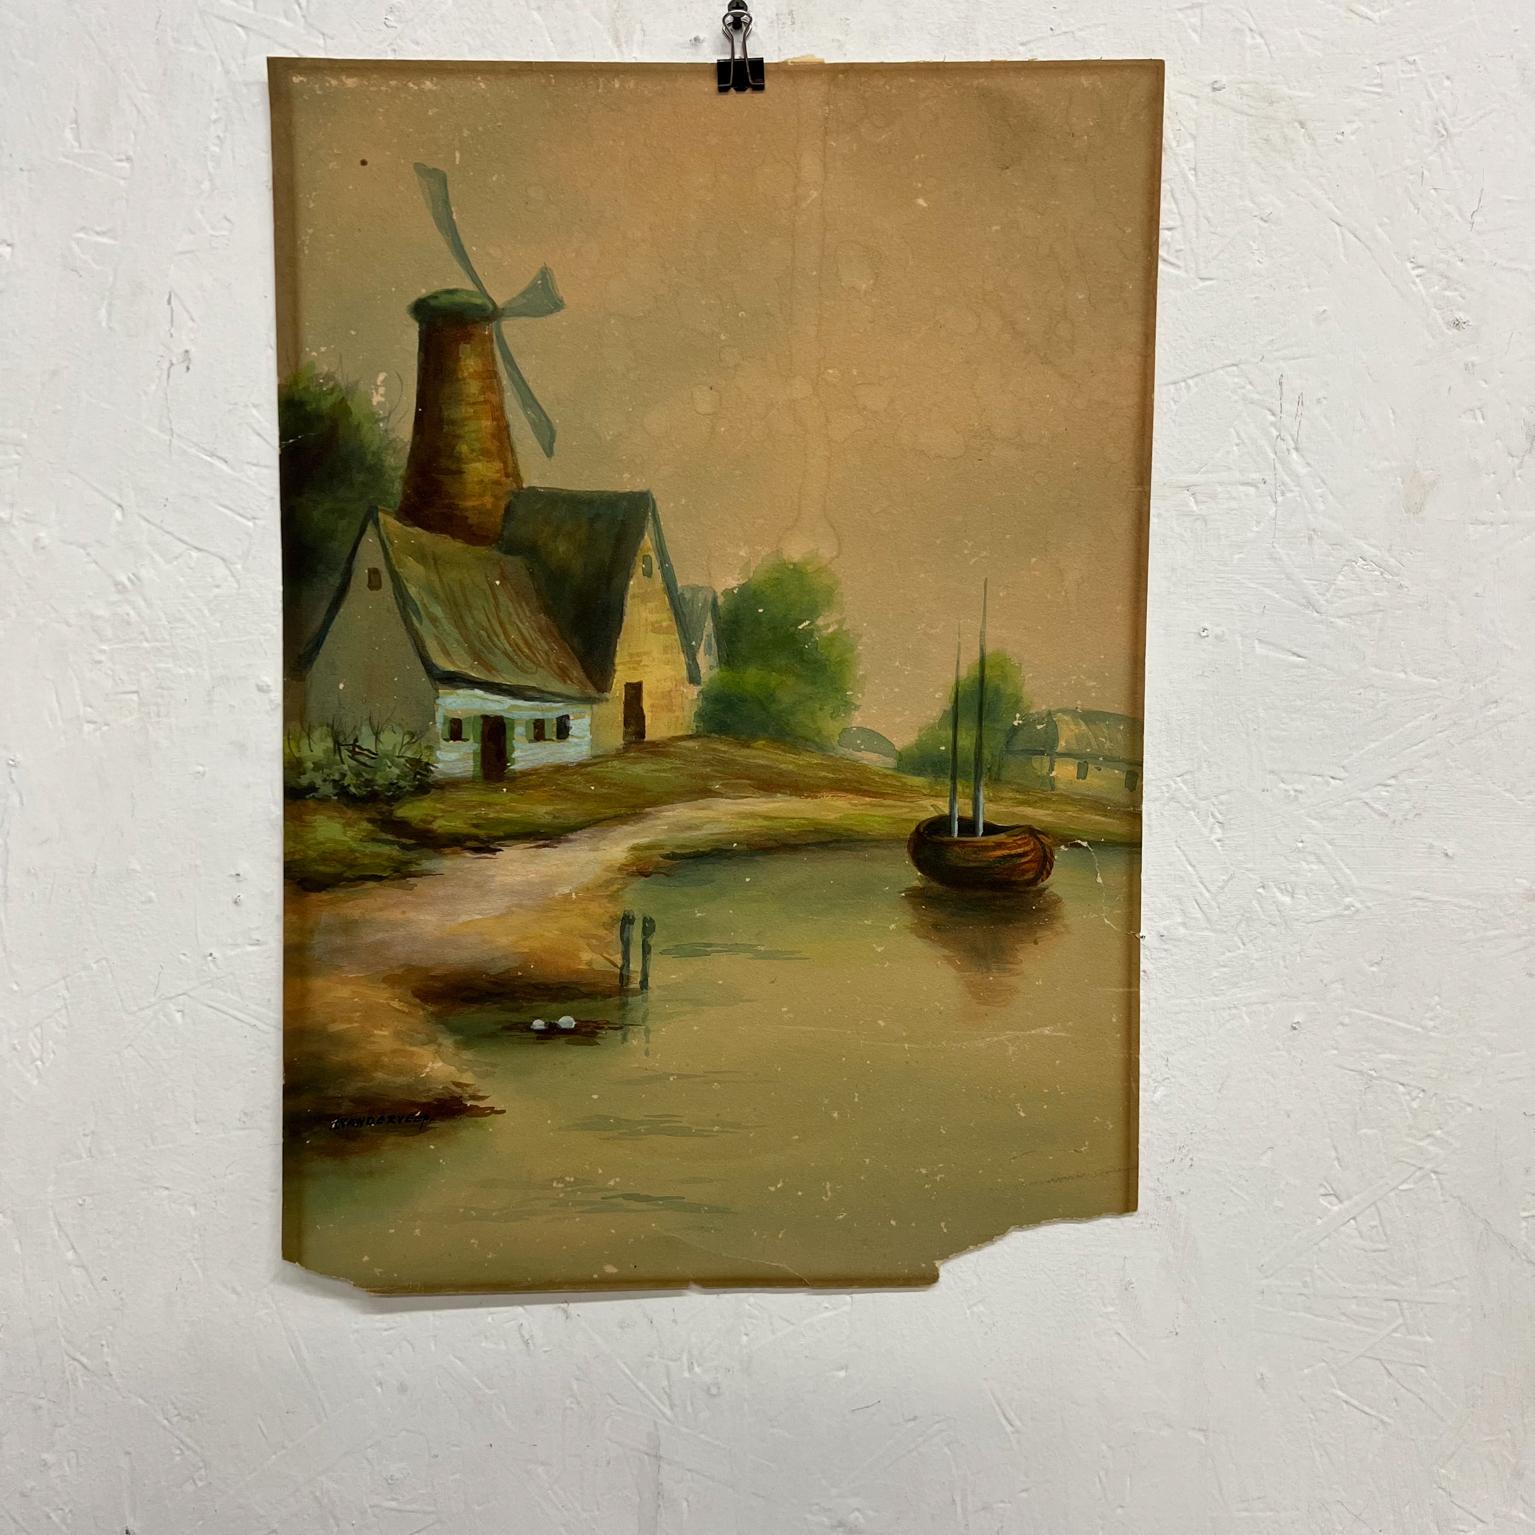 1950s vintage Art watercolor scenic Holland countryside windmill lake & boat 
Mesures : 14.25 x 20.15
Signé, incapable de lire.
Le papier a une déchirure dans le coin inférieur droit.
Voir toutes les images.


  